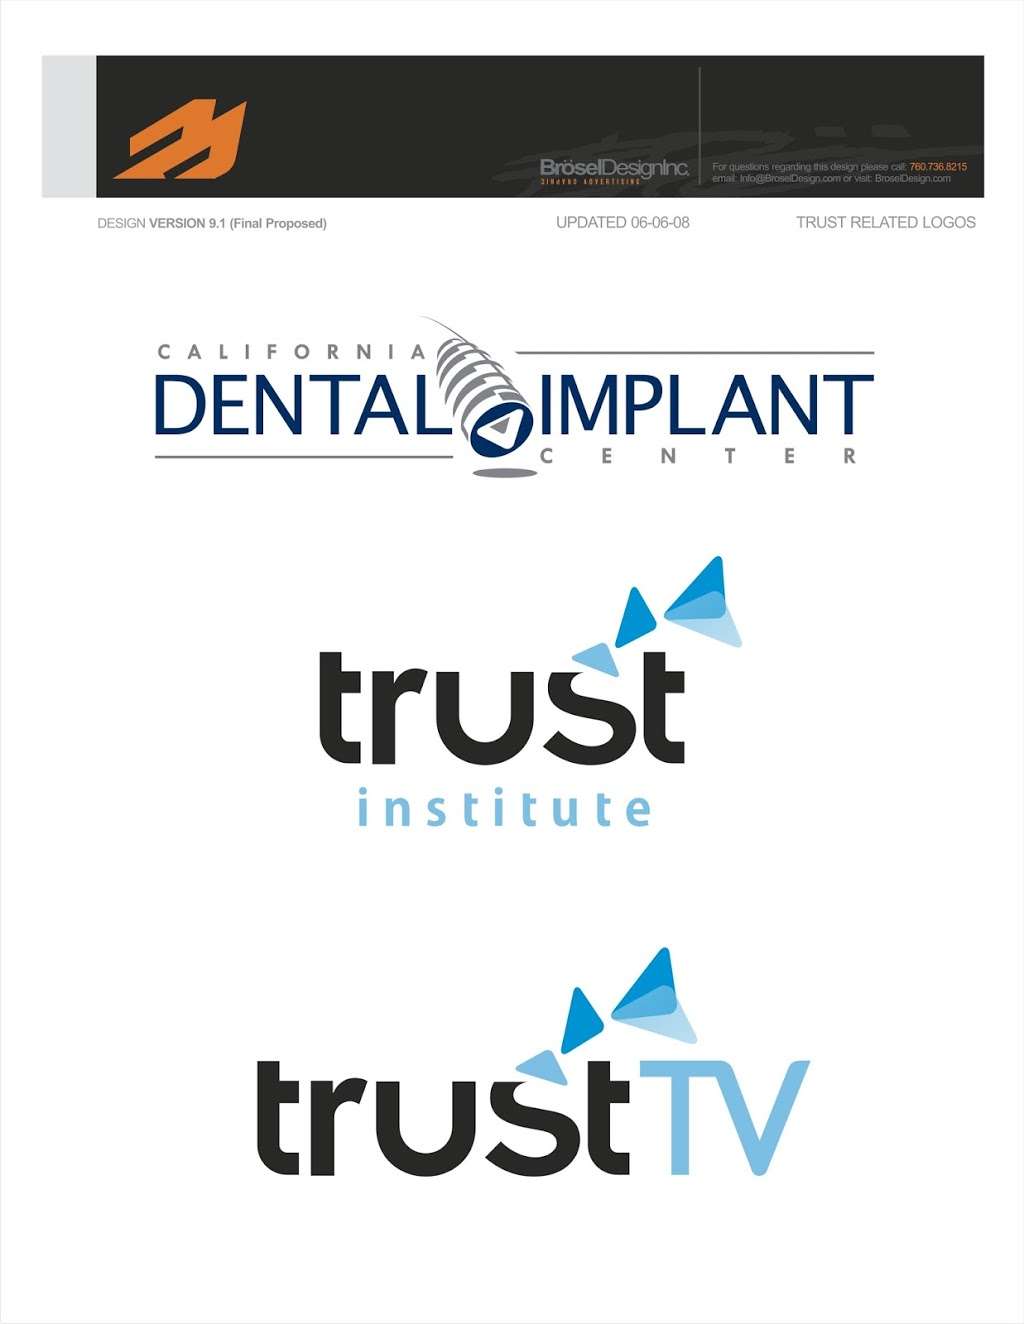 California Dental Implant Center | 295 Terracina Blvd, Redlands, CA 92373, USA | Phone: (909) 307-0770